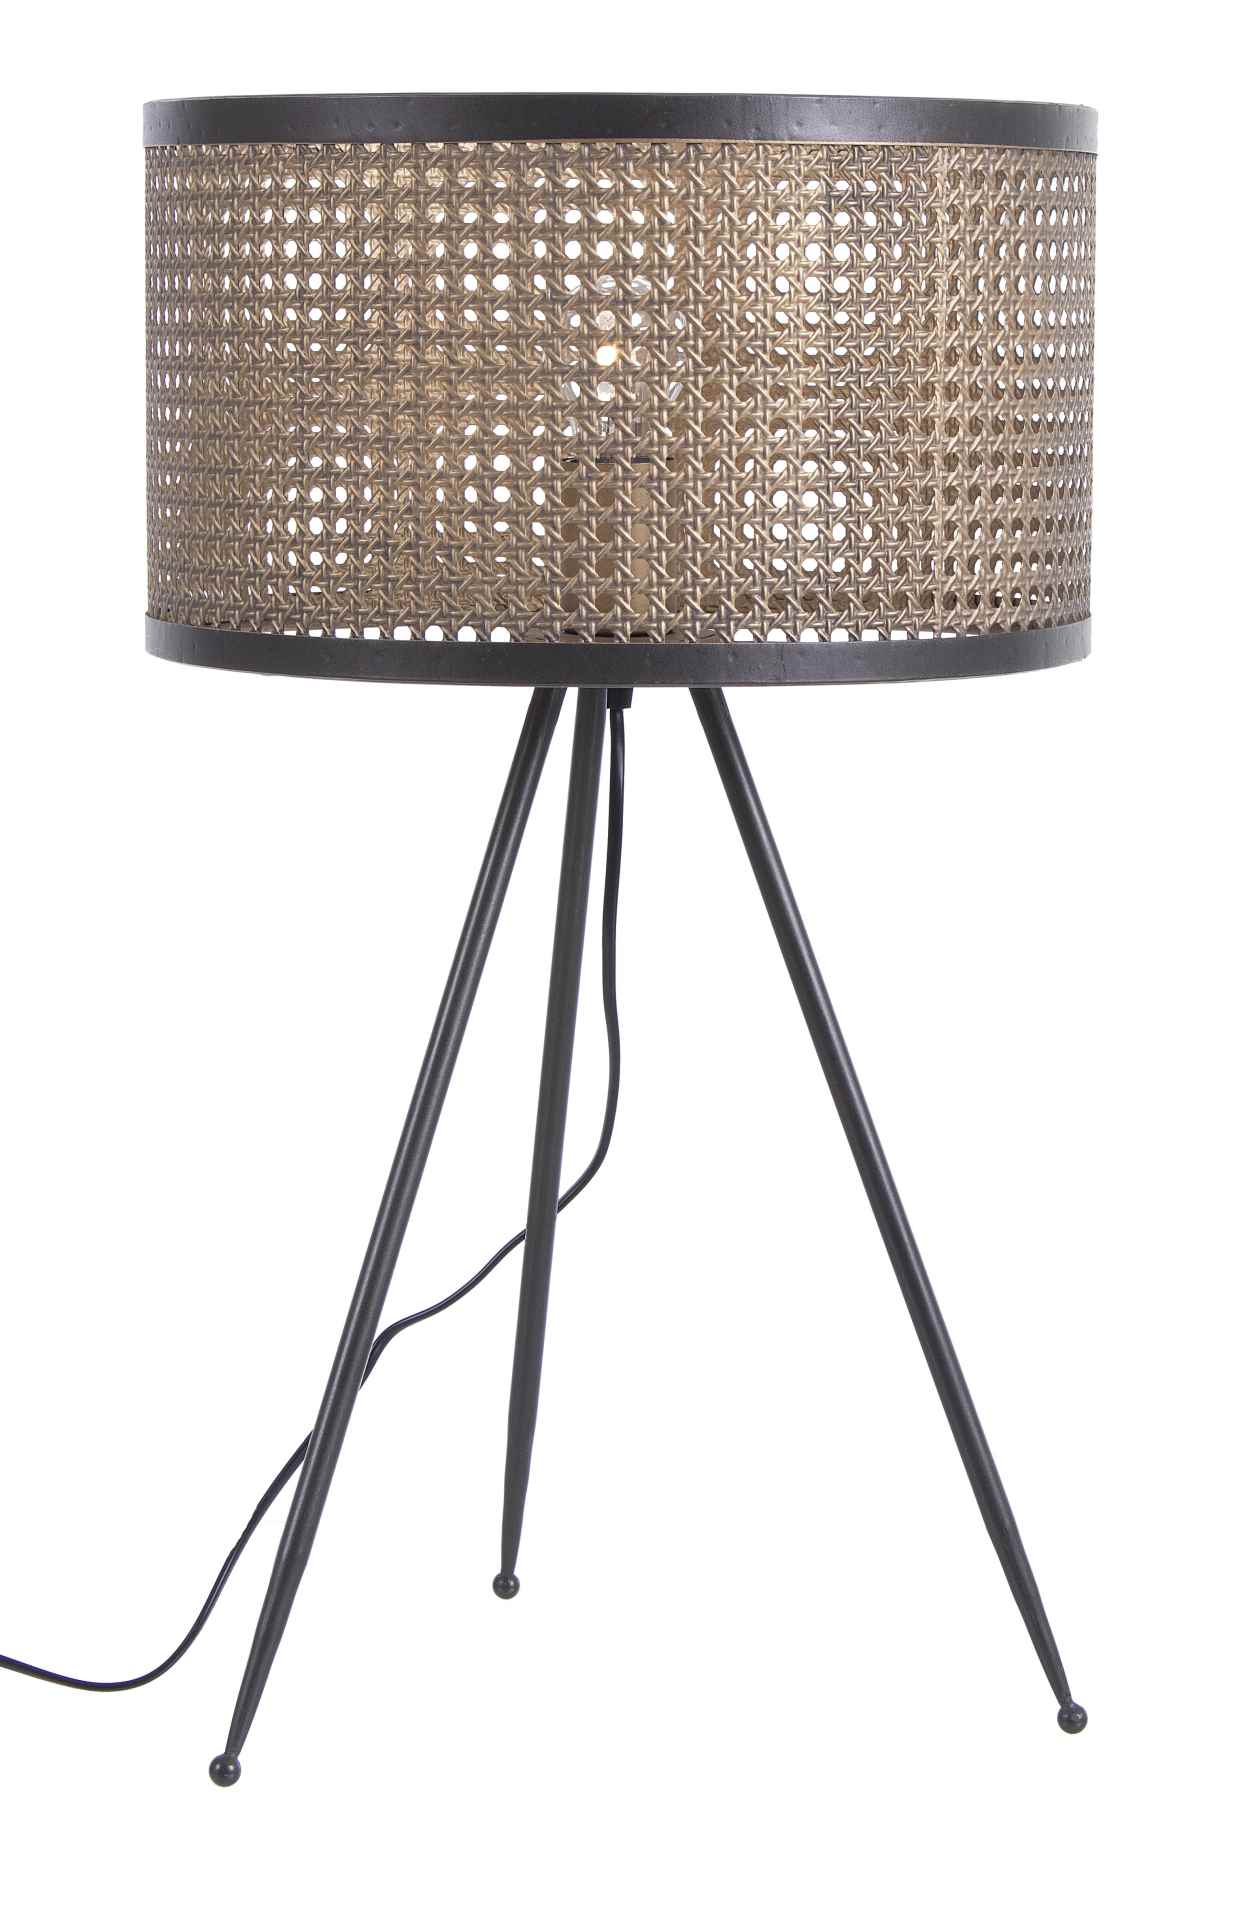 Die Tischleuchte Modish überzeugt mit ihrem modernen Design. Gefertigt wurde sie aus Metall, welches einen Anthrazit Farbton besitzt. Der Lampenschirm ist auch aus Metall und hat eine Bronze Farbe. Die Lampe besitzt eine Höhe von 35 cm.